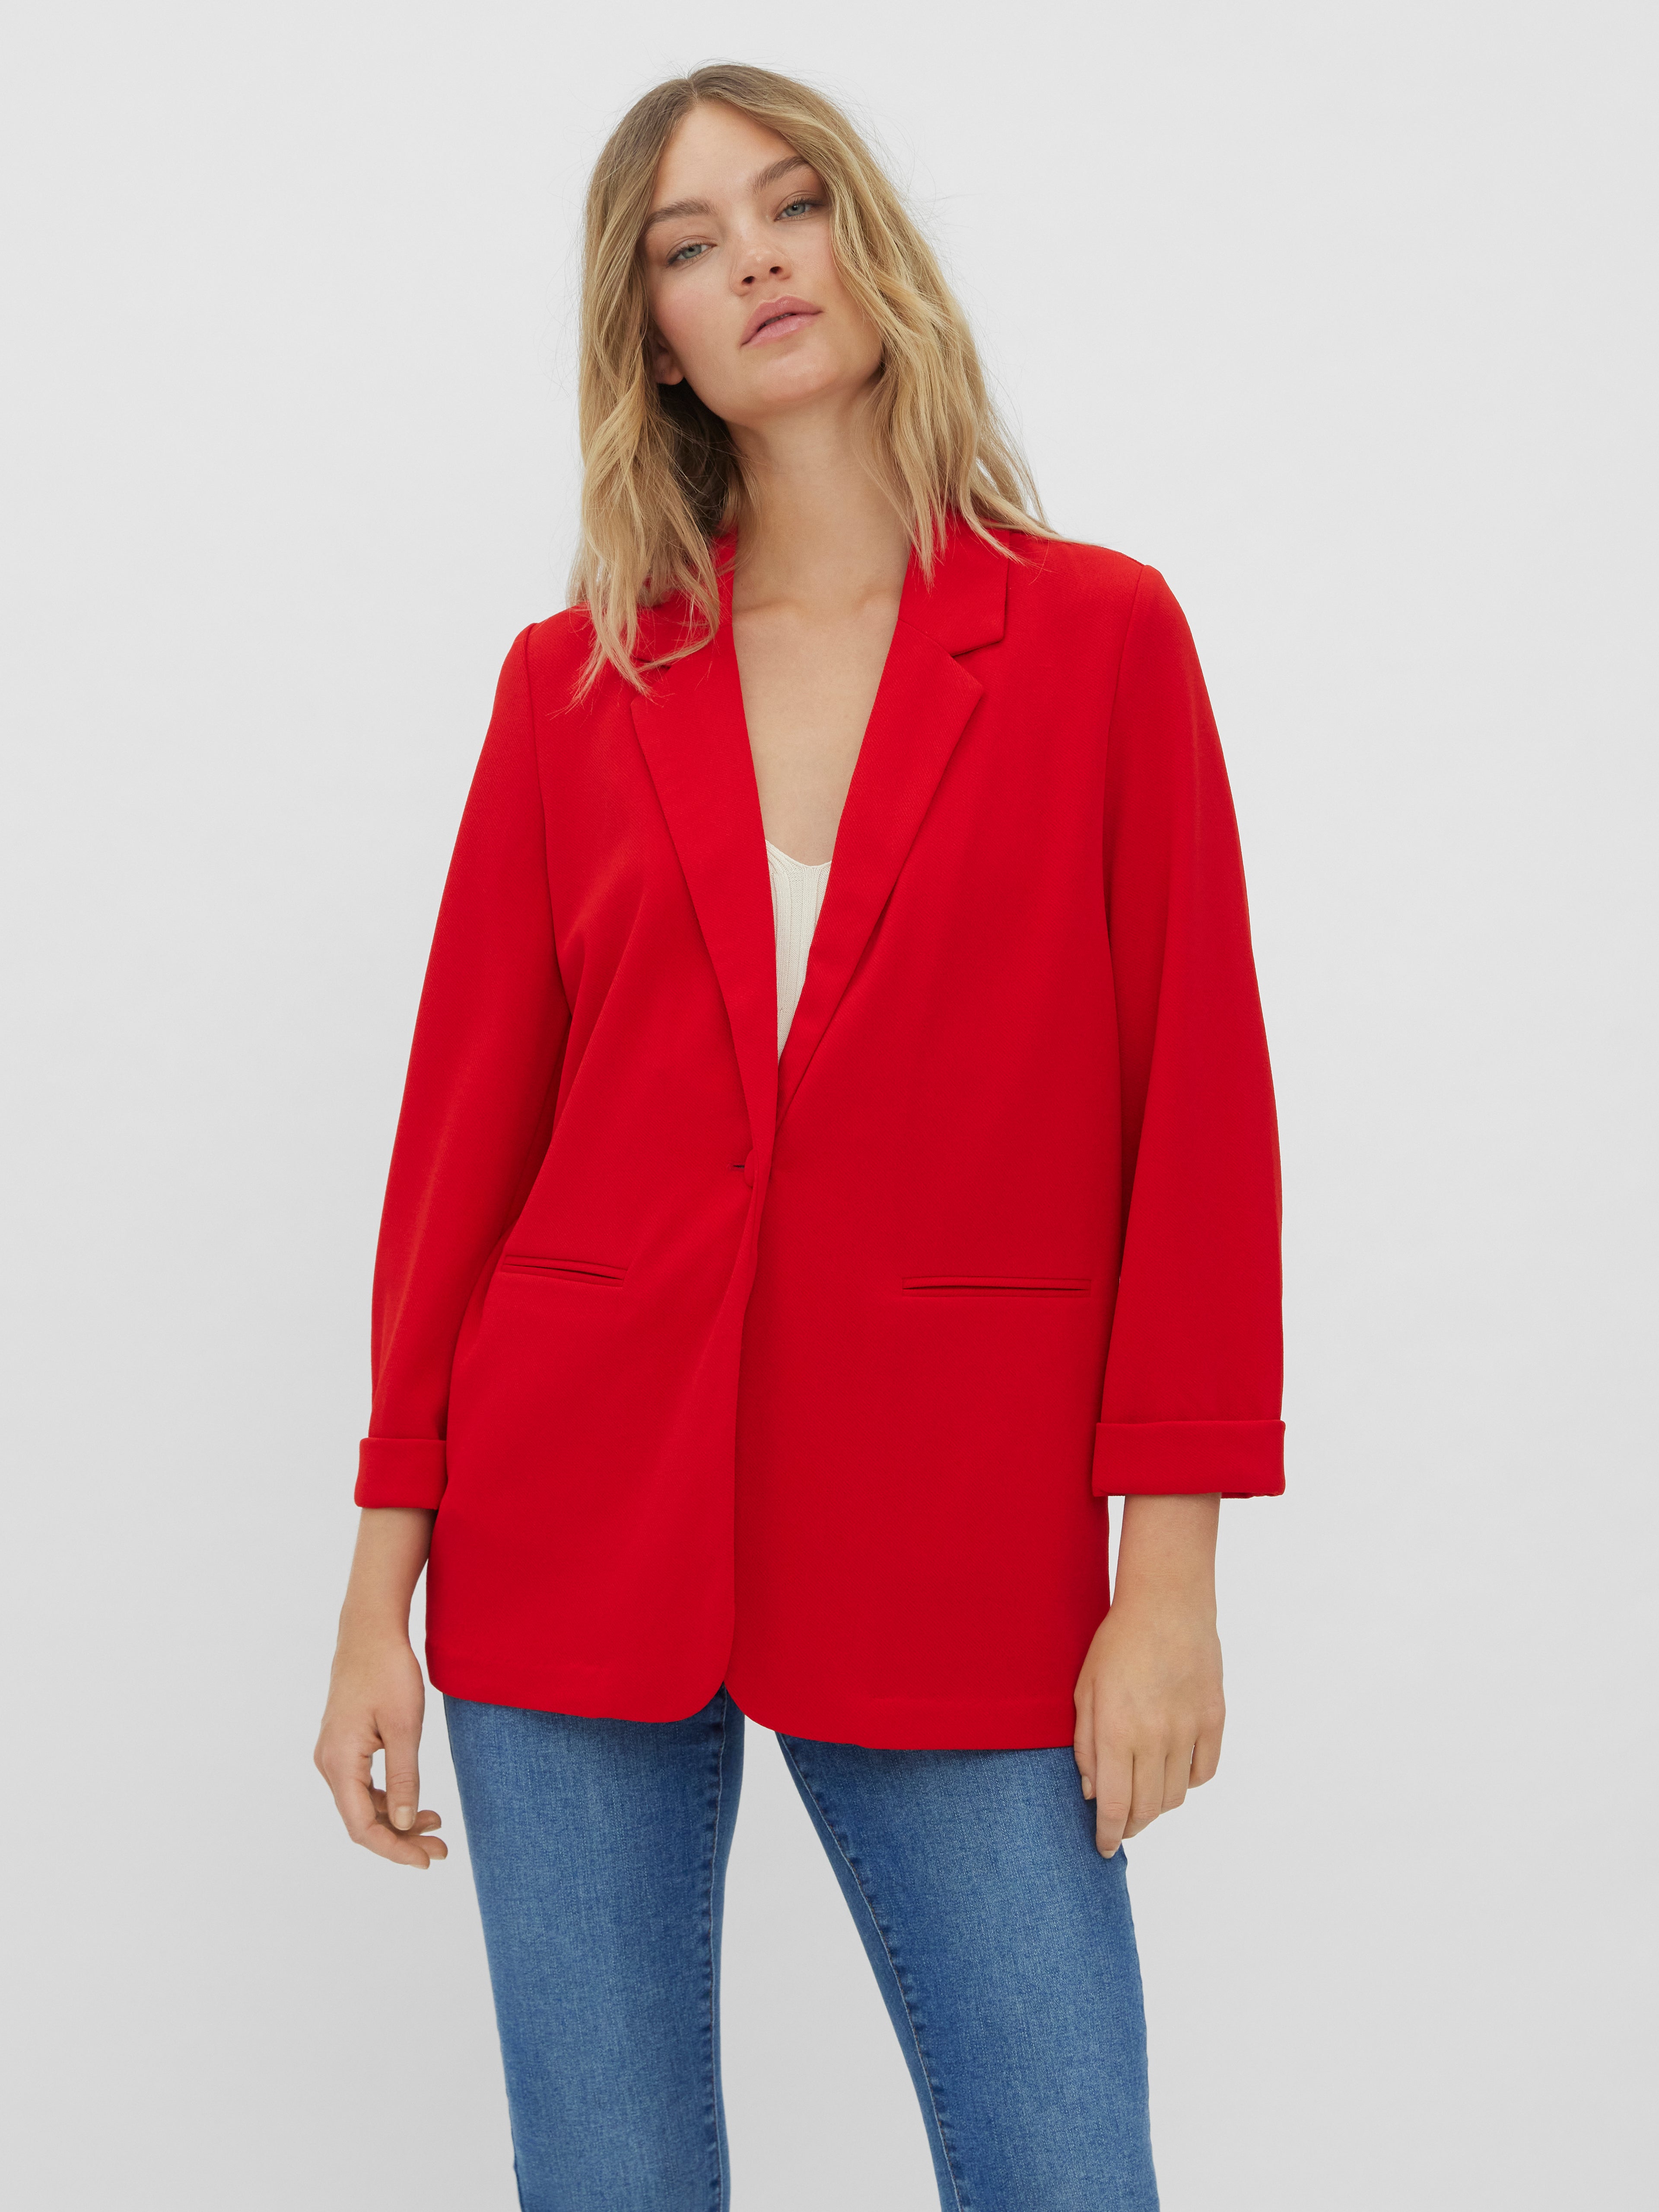 Vero Moda Blazer hunter in Rot Sakkos und Anzugsjacken Damen Bekleidung Jacken Blazer 